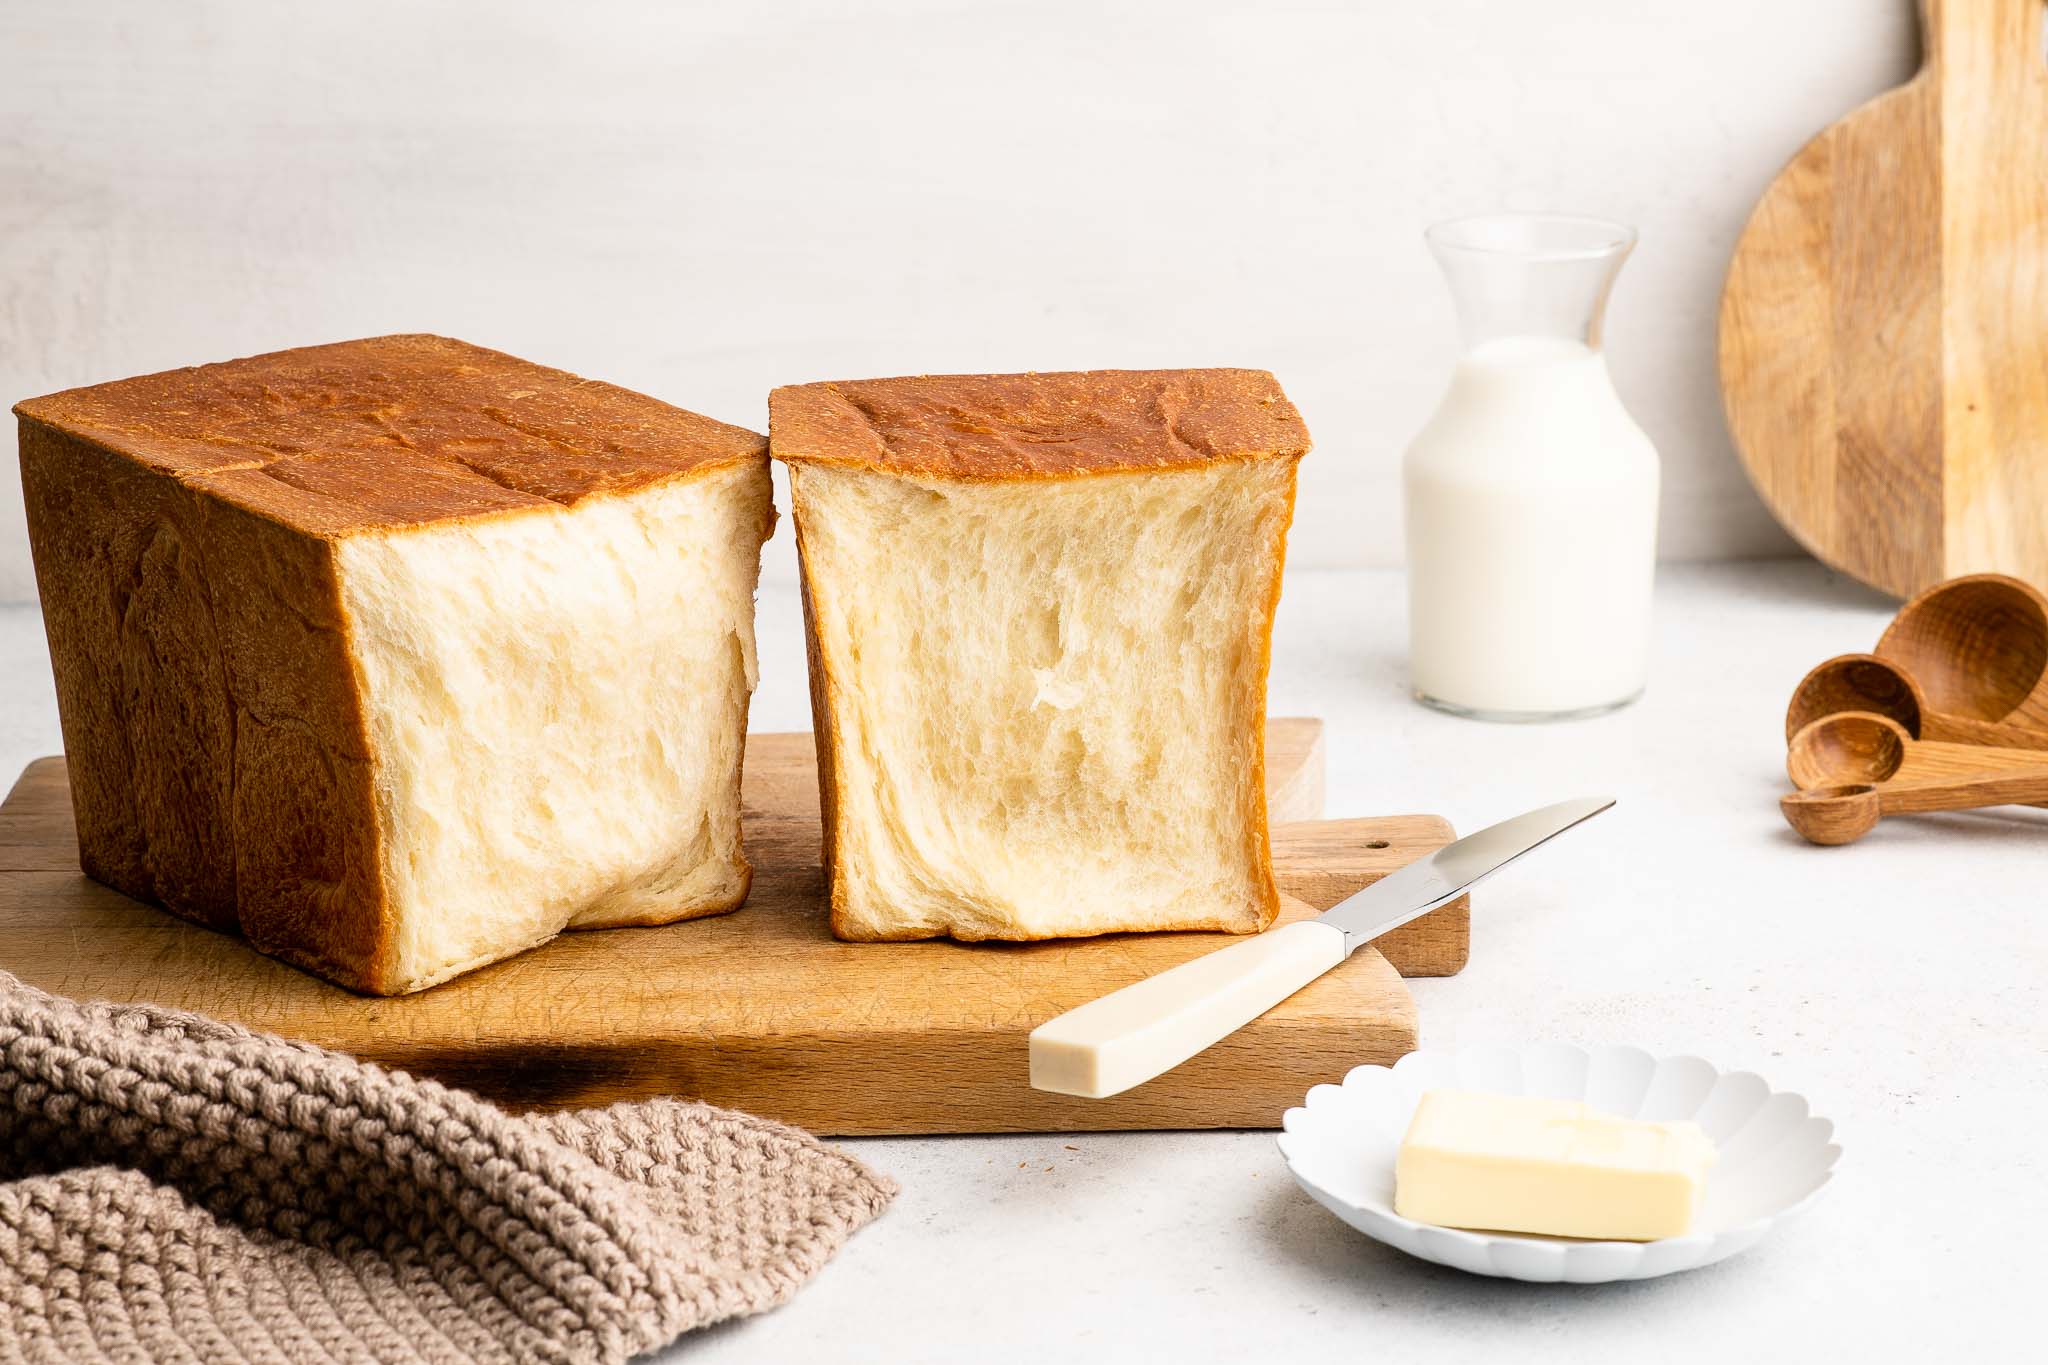 Japanese milk bread loaf on wooden board